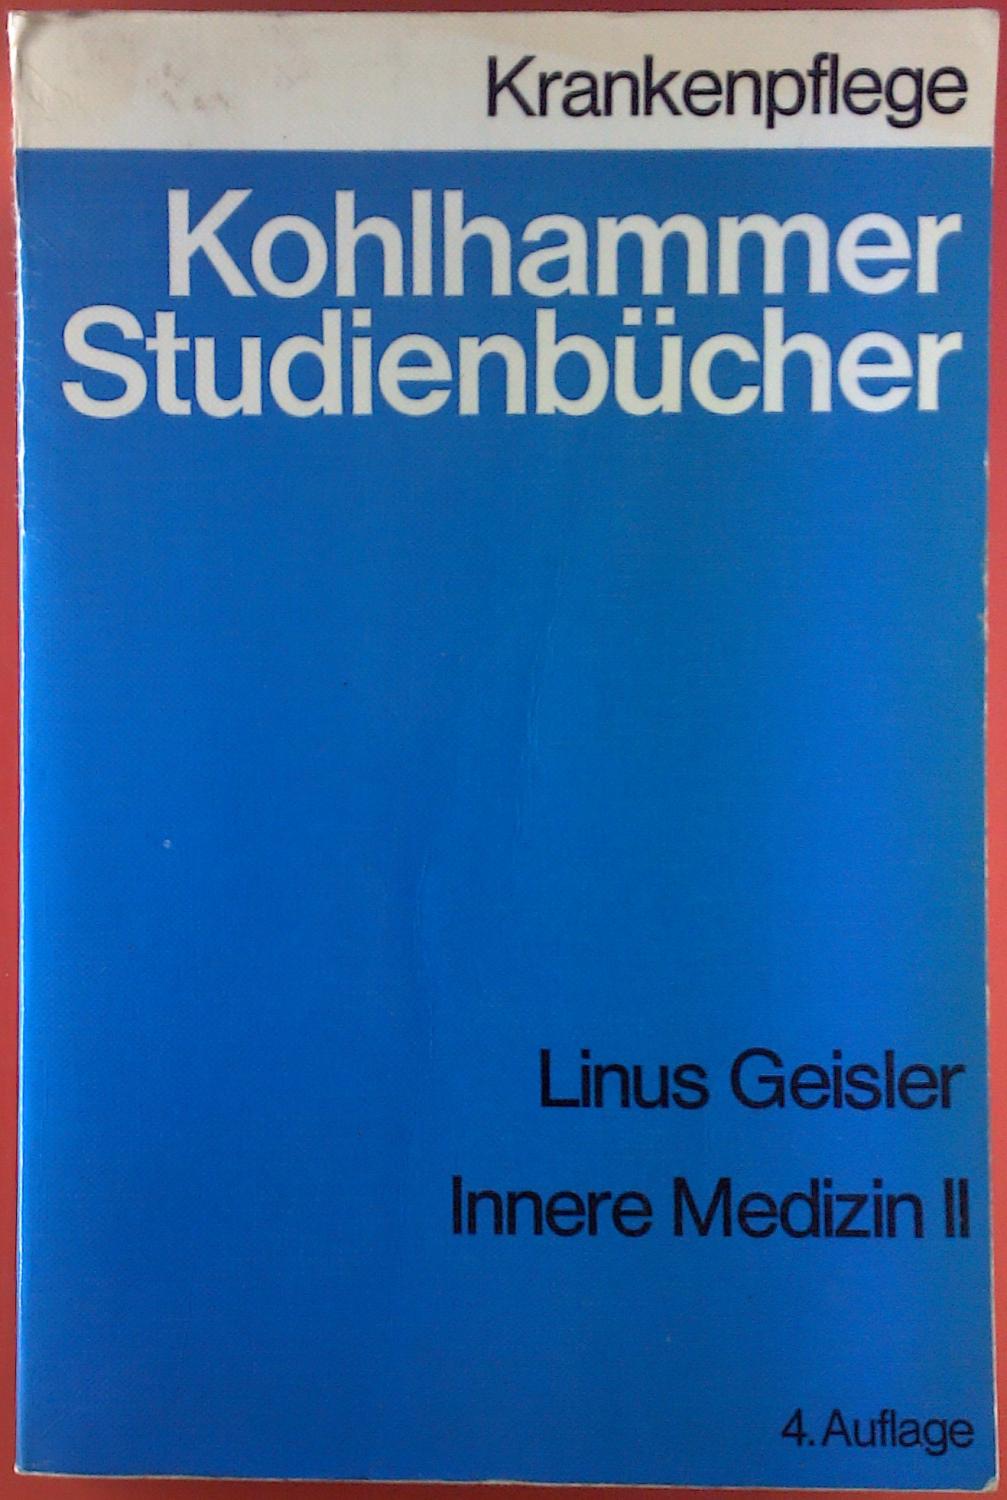 Innere Medizin II. Kohlhammer Studienbücher. Krankenpflege. 4. Auflage. - Prof. Dr. med. Linus Geisler